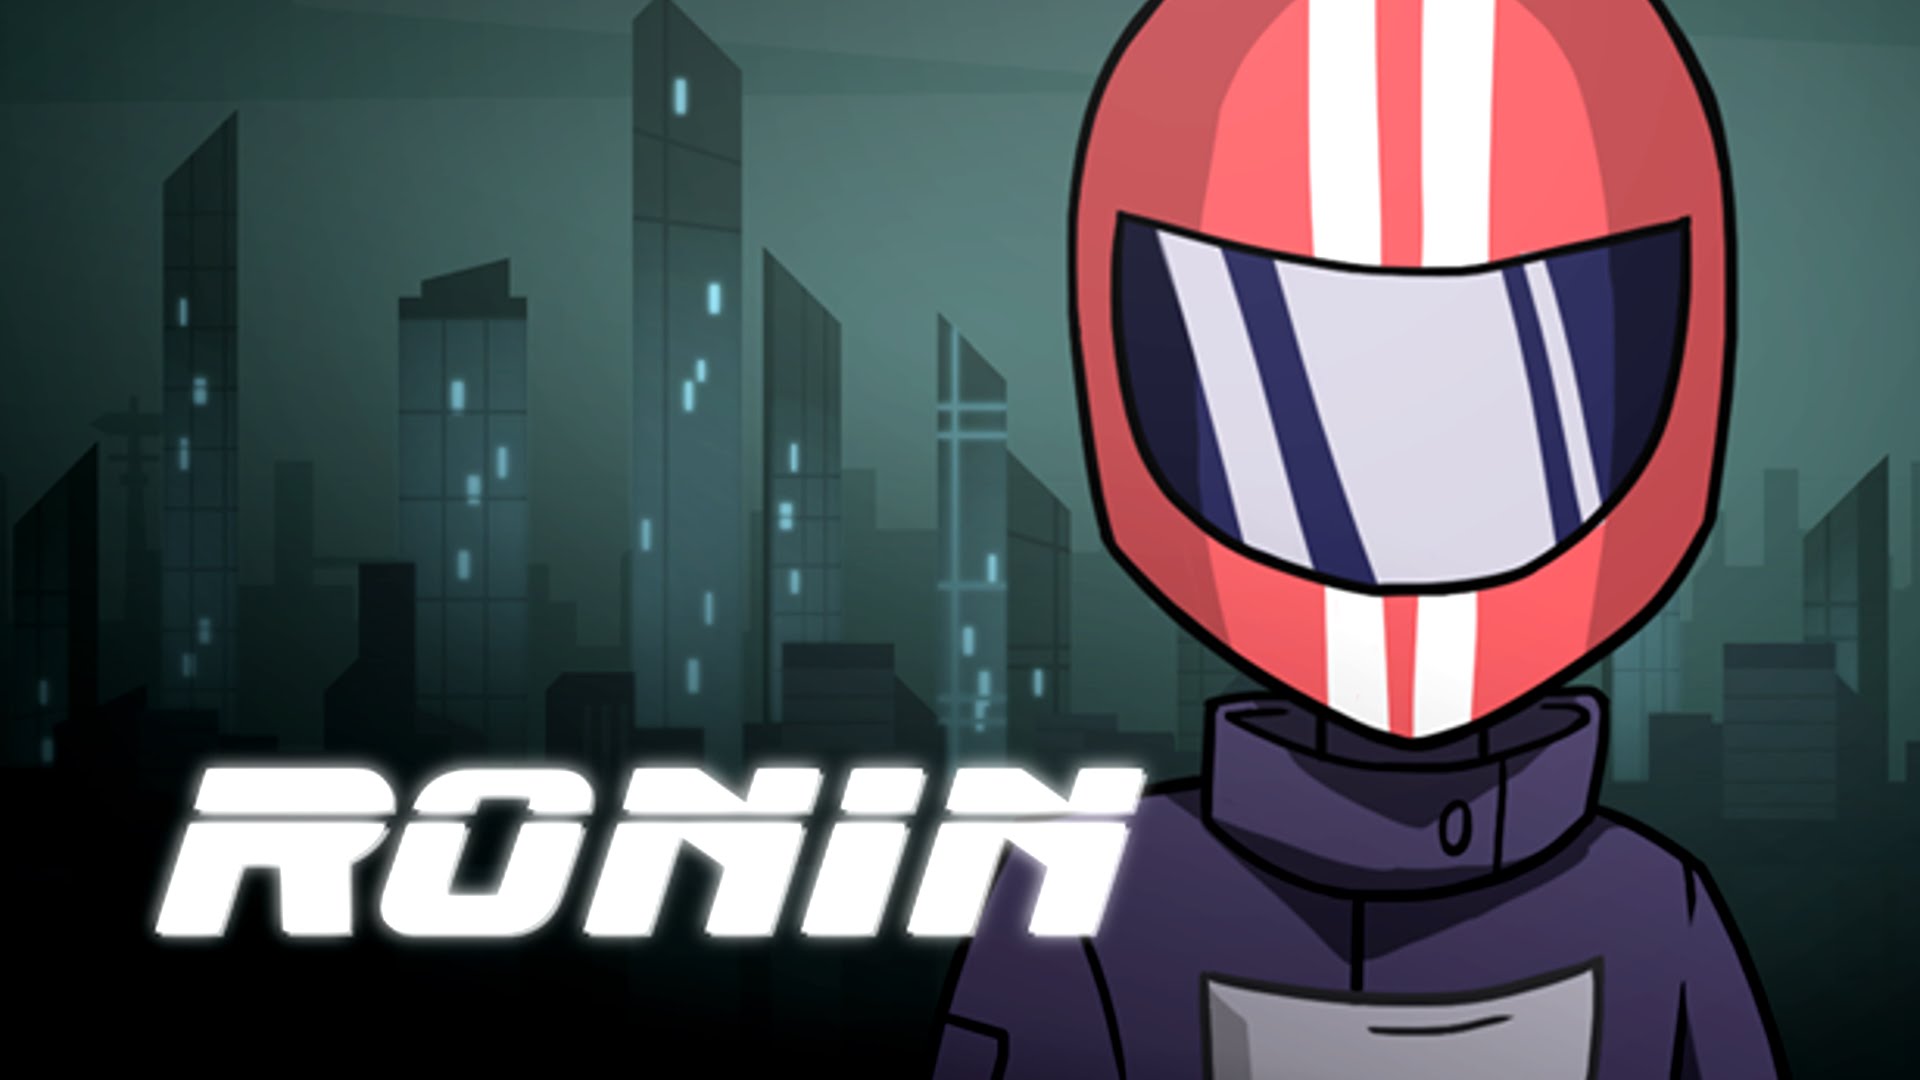 Ronin Review - GodisaGeek.com1920 x 1080